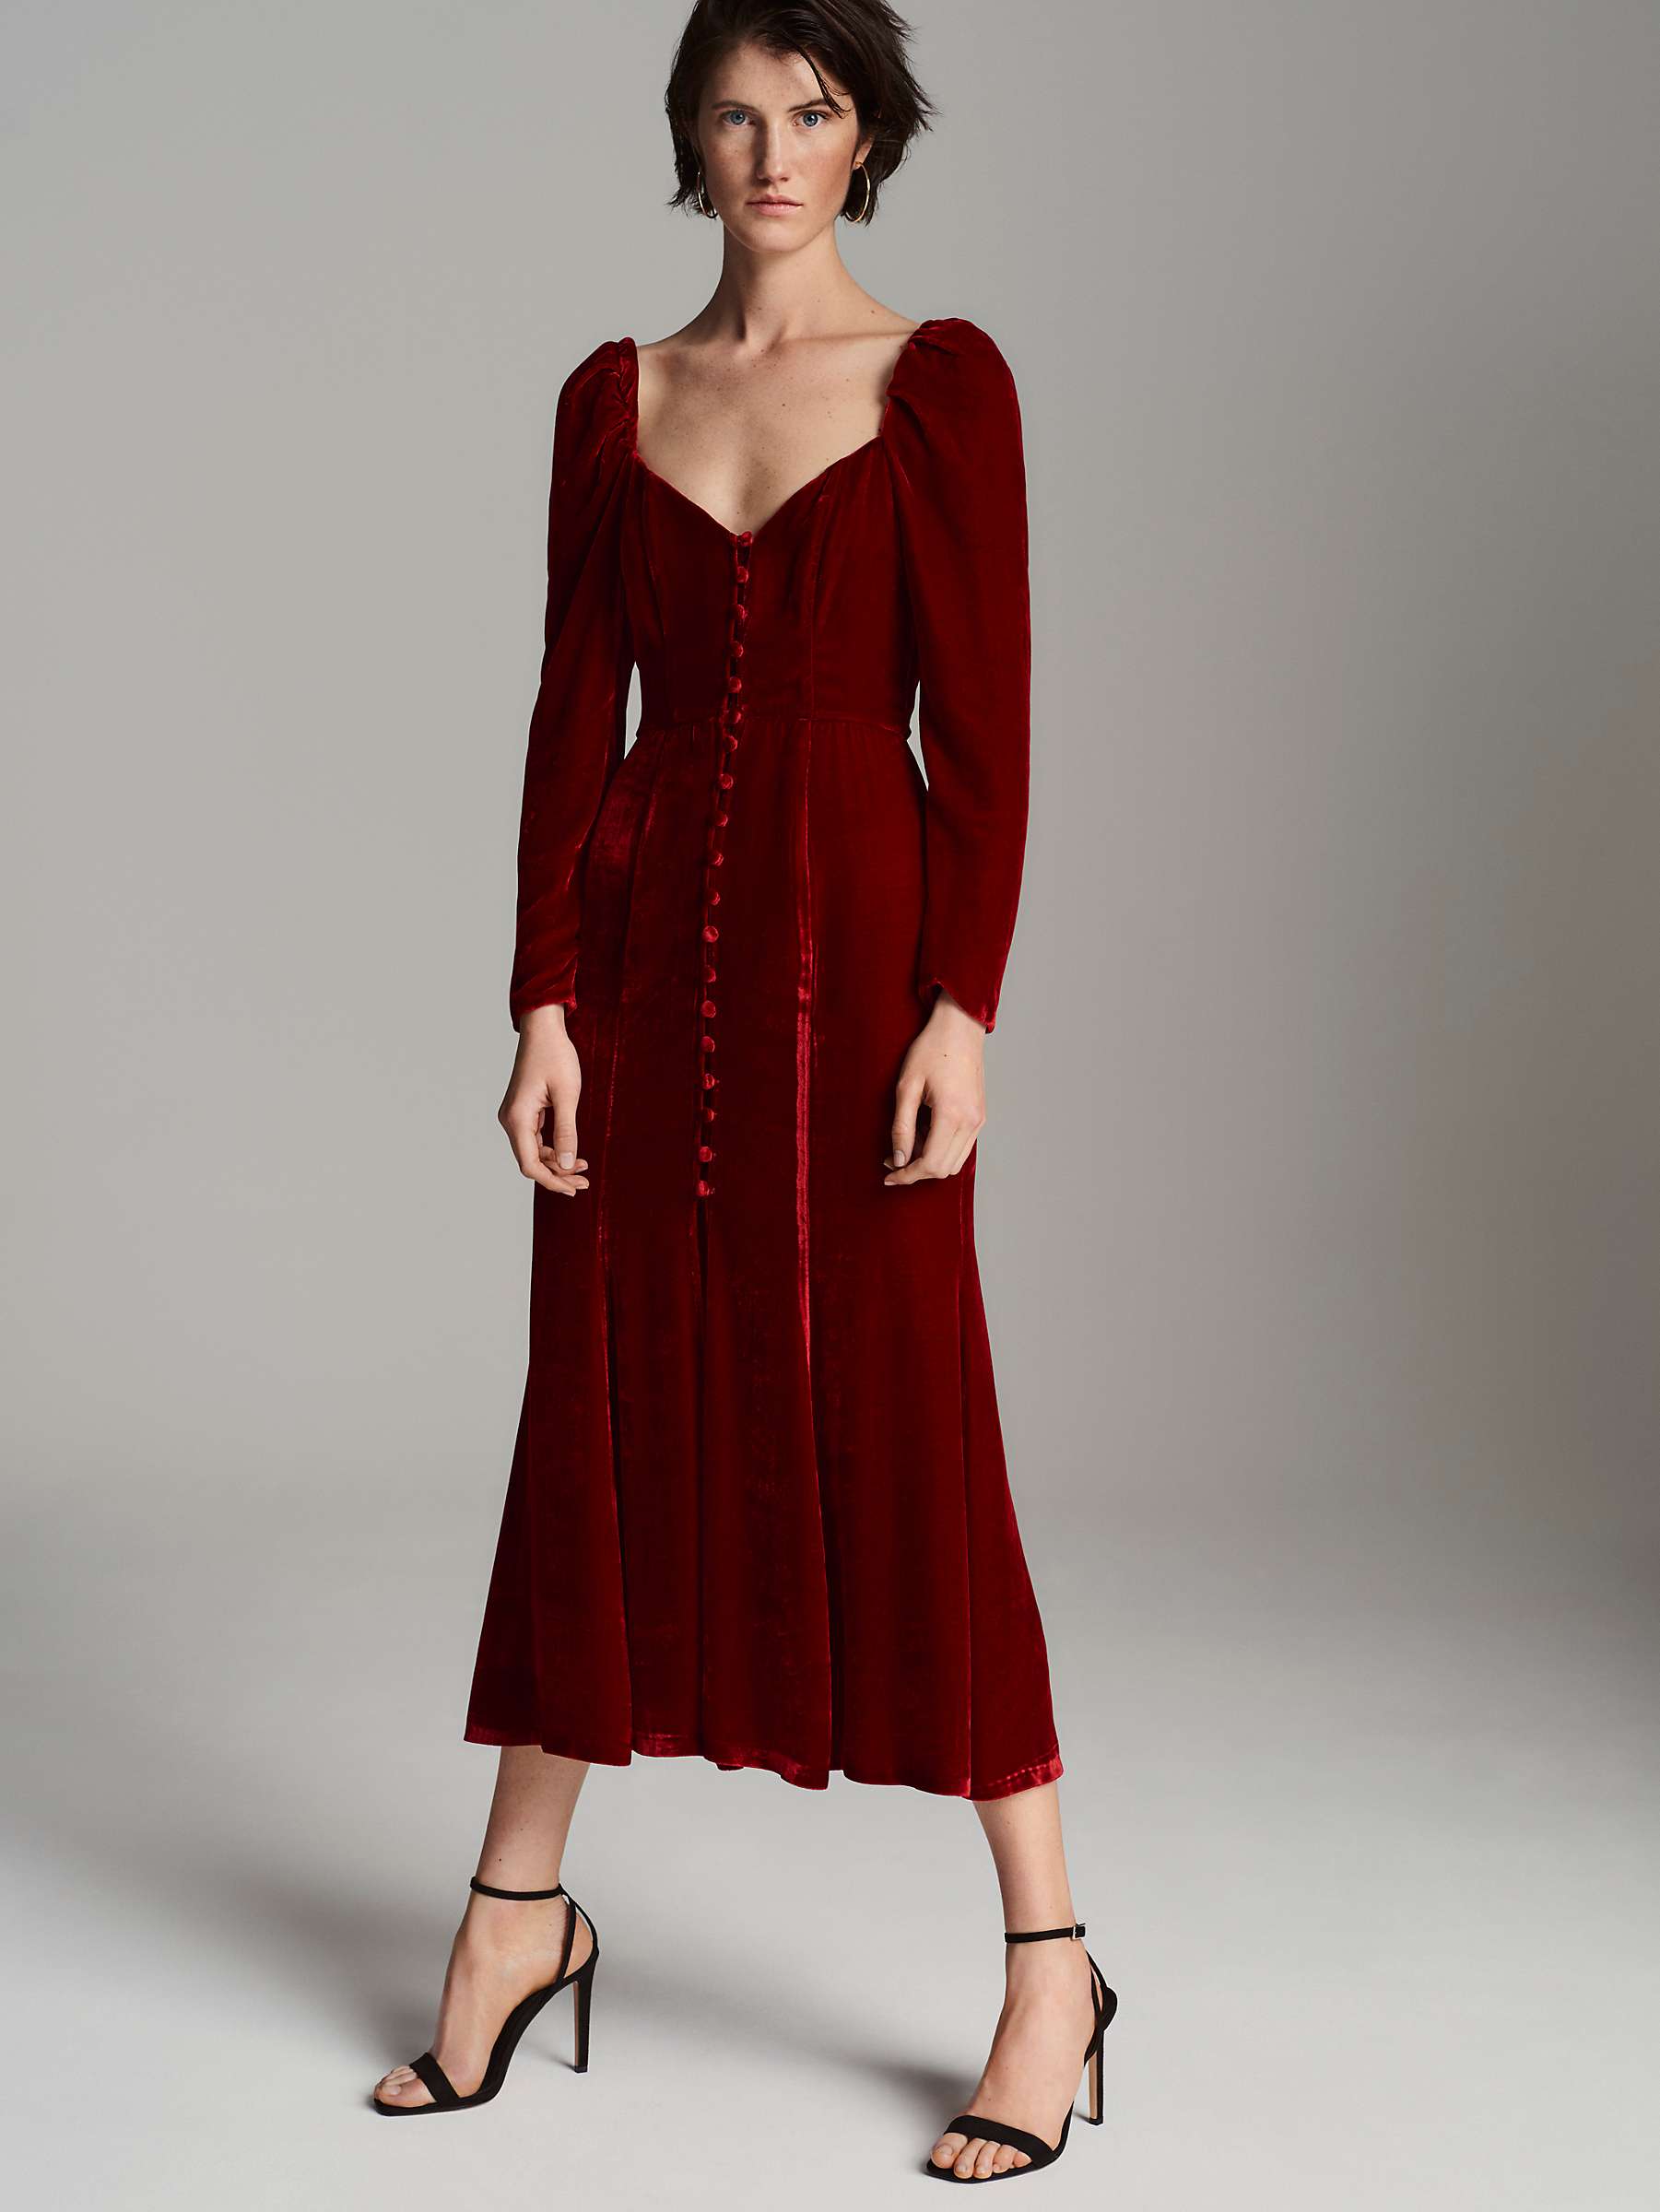 Ghost Sydney Silk Velvet Dress, Dark Red at John Lewis & Partners